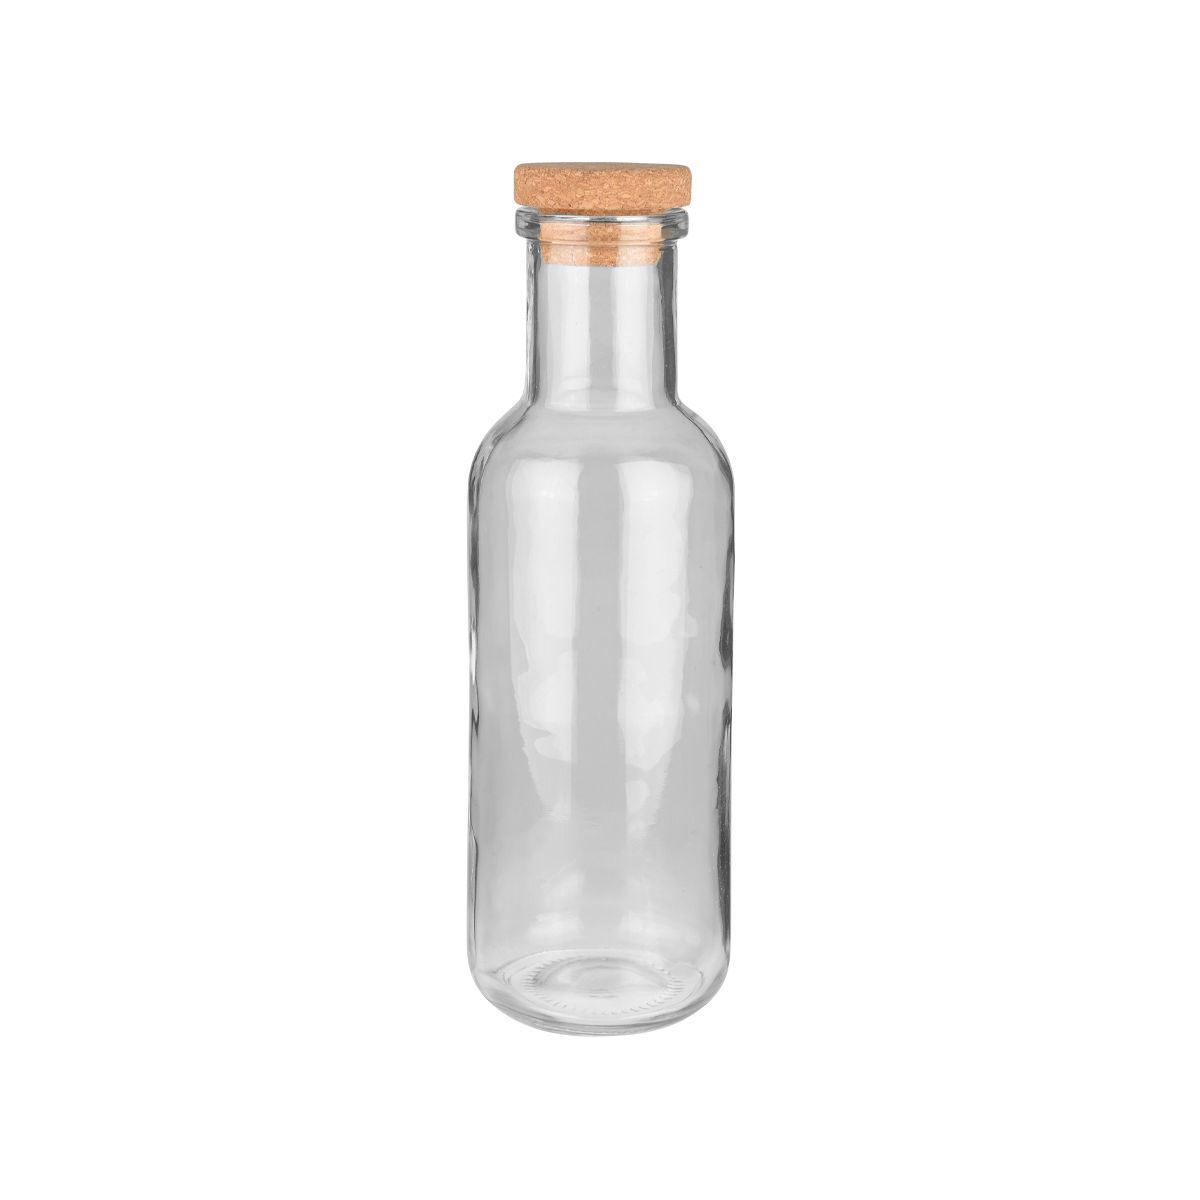 Μπουκάλι Γυάλινο-Φελλός Γκρι Essentials Estia 1000ml-8,7×27,8εκ. 01-21863 (Σετ 2 Τεμάχια) (Υλικό: Γυαλί, Χρώμα: Γκρι) – estia – 01-21863